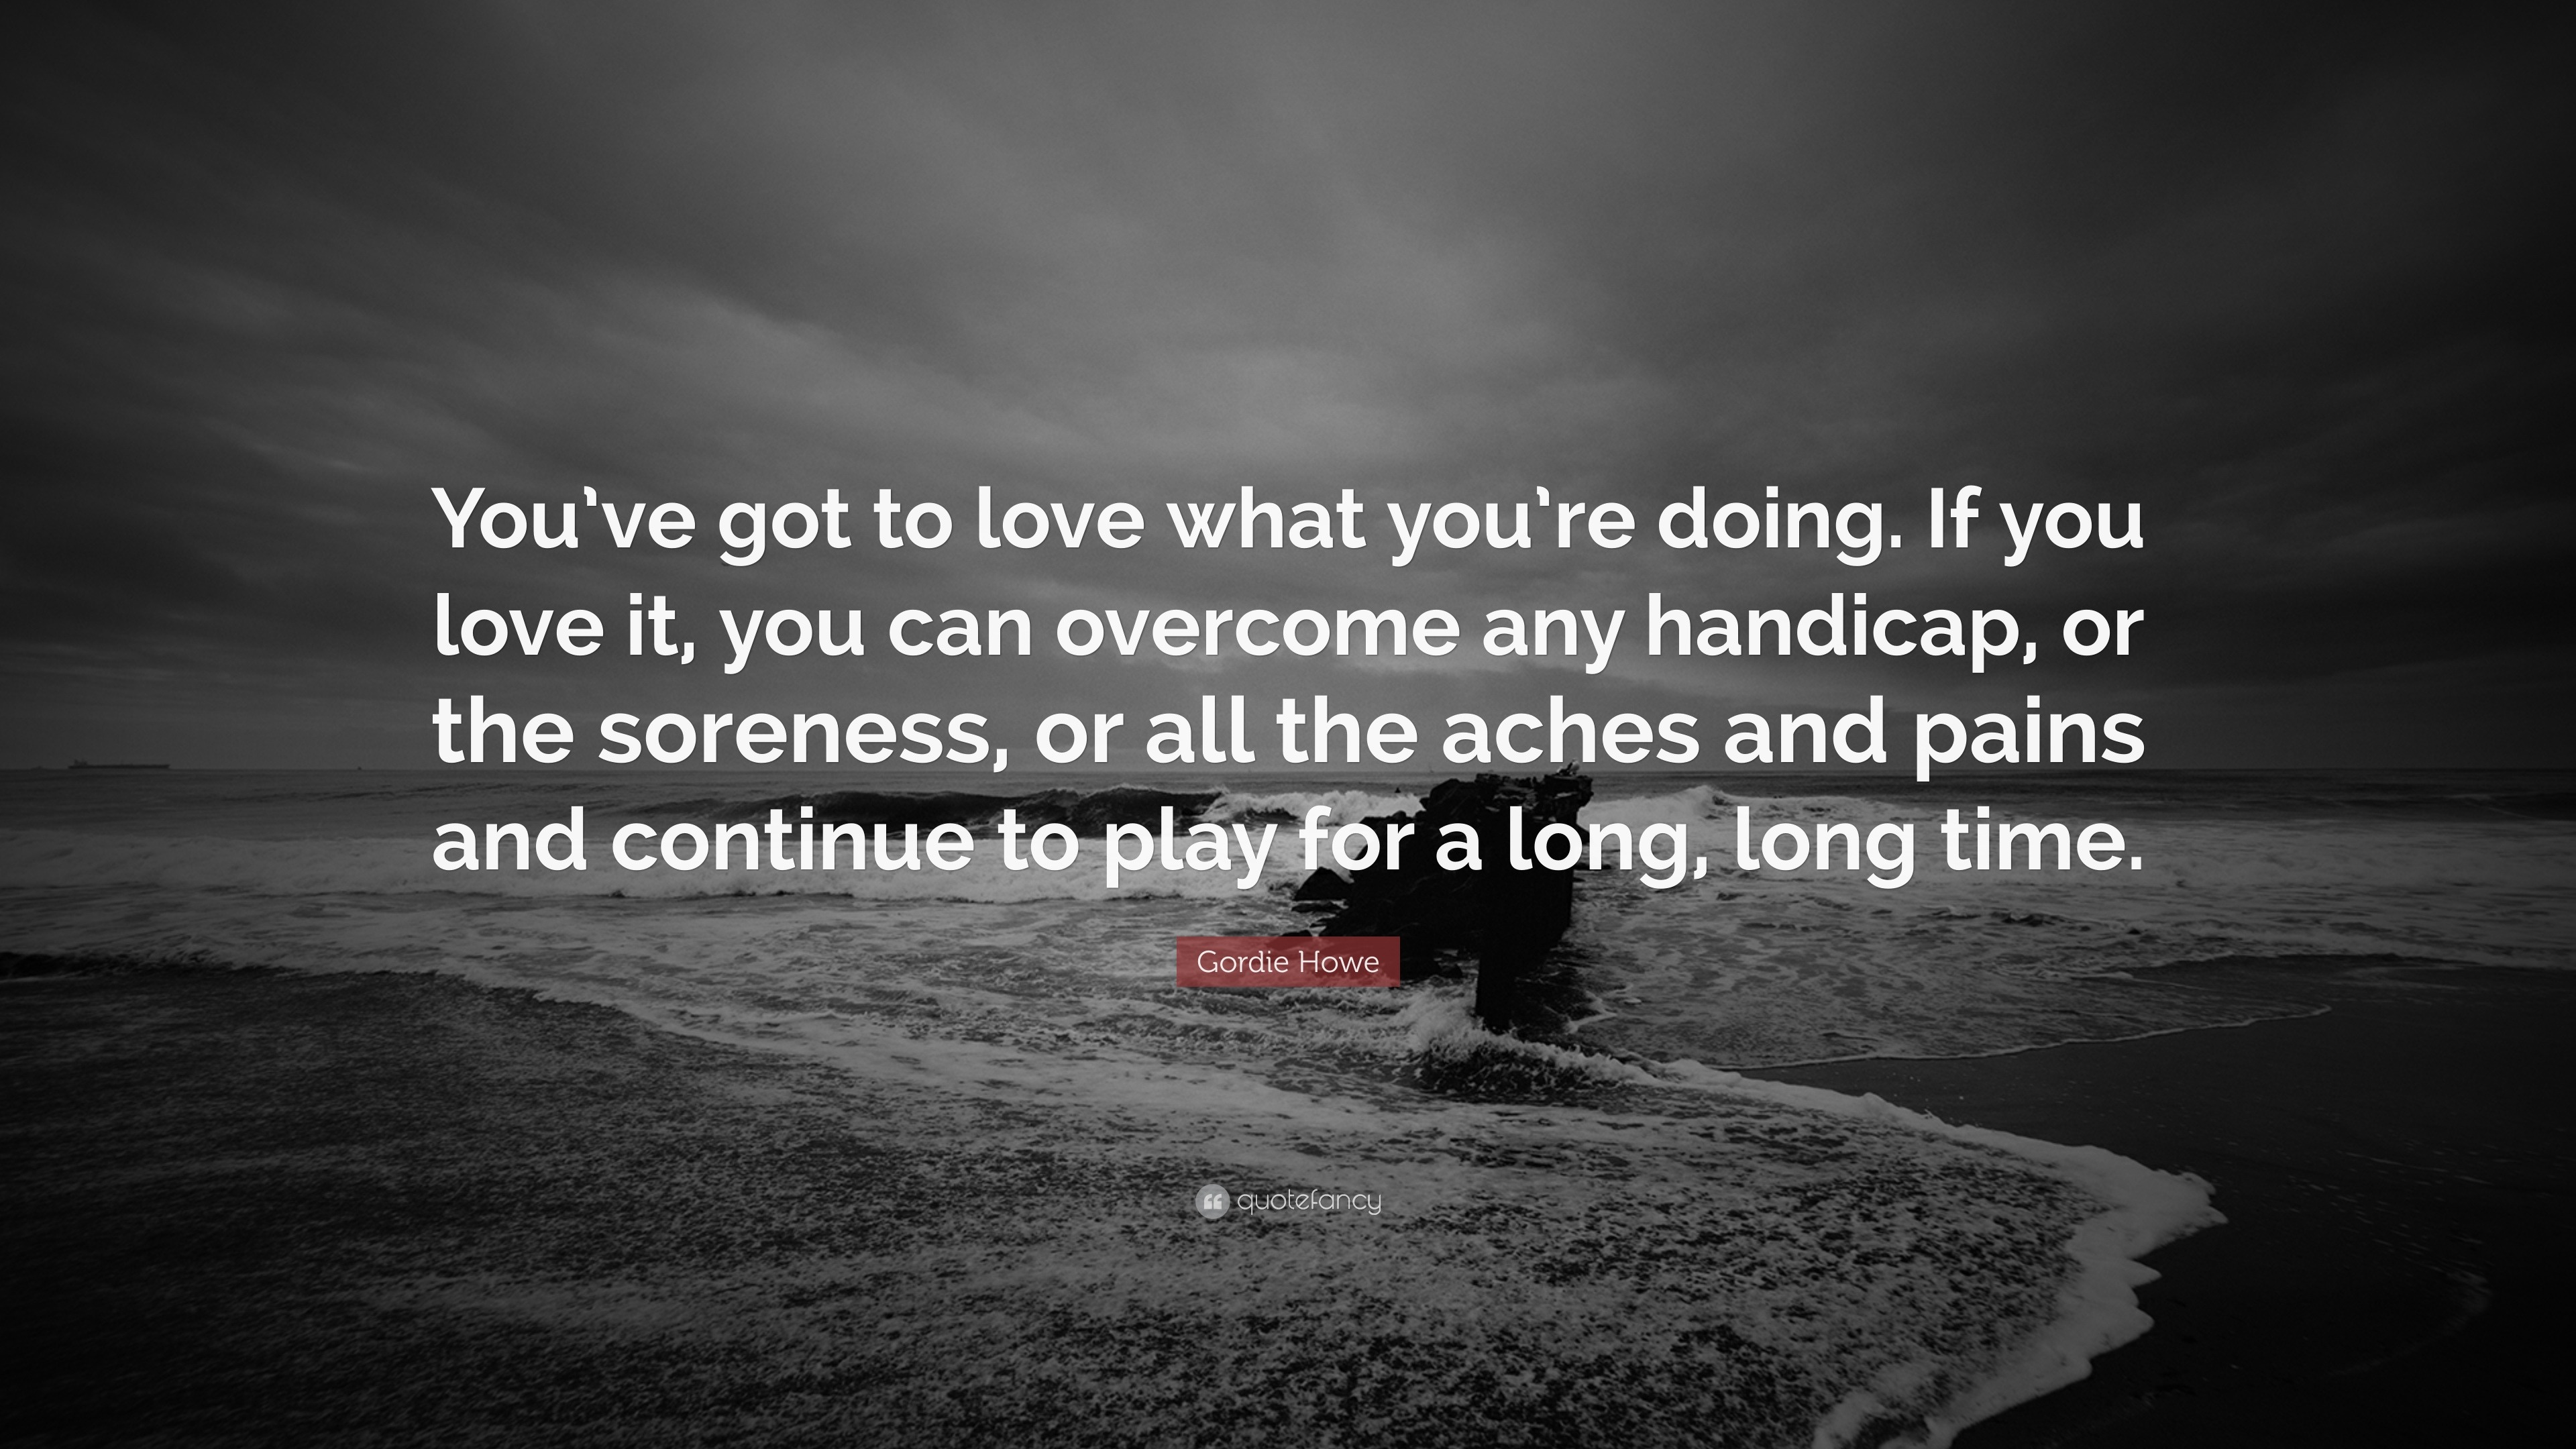 Quotes of the Week: Gordie Howe